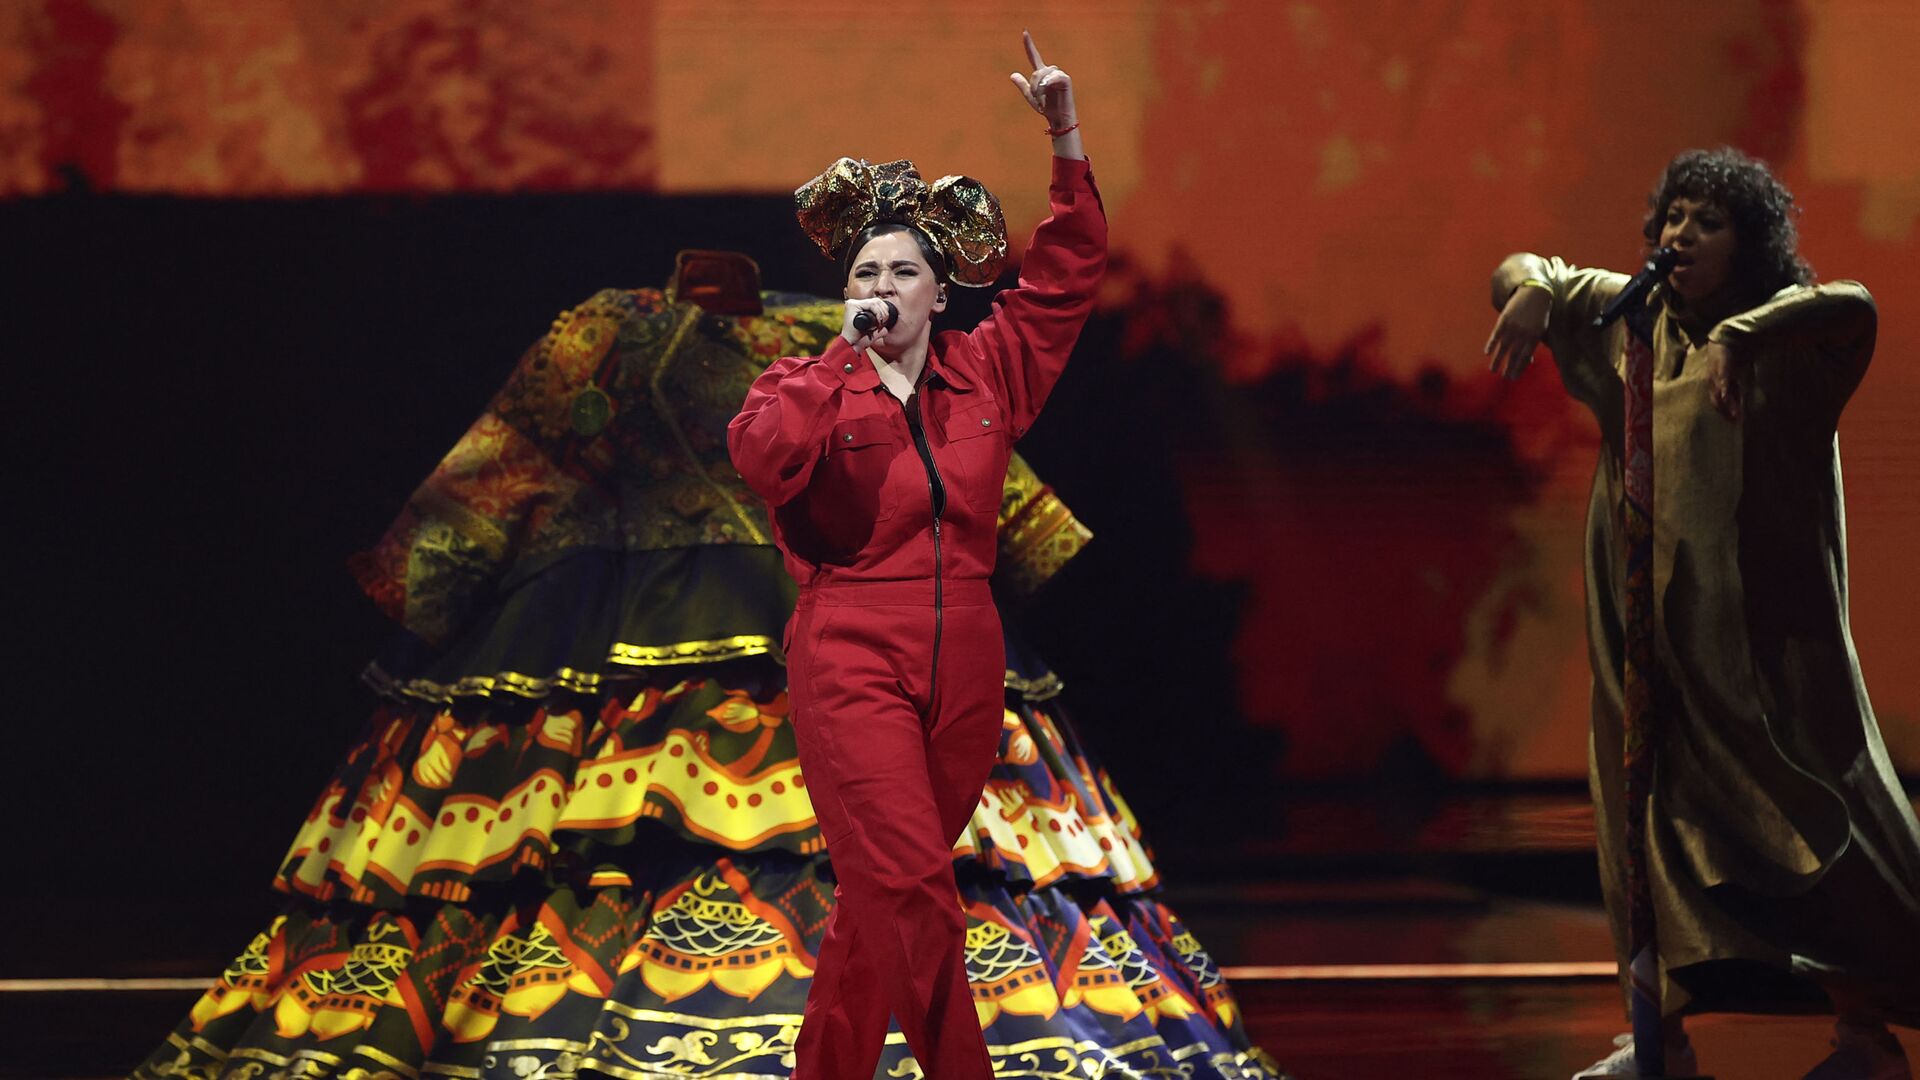 Певица Манижа (Россия) выступает в первом полуфинале конкурса песни Евровидение-2021 в Роттердаме - Sputnik Azərbaycan, 1920, 20.05.2021